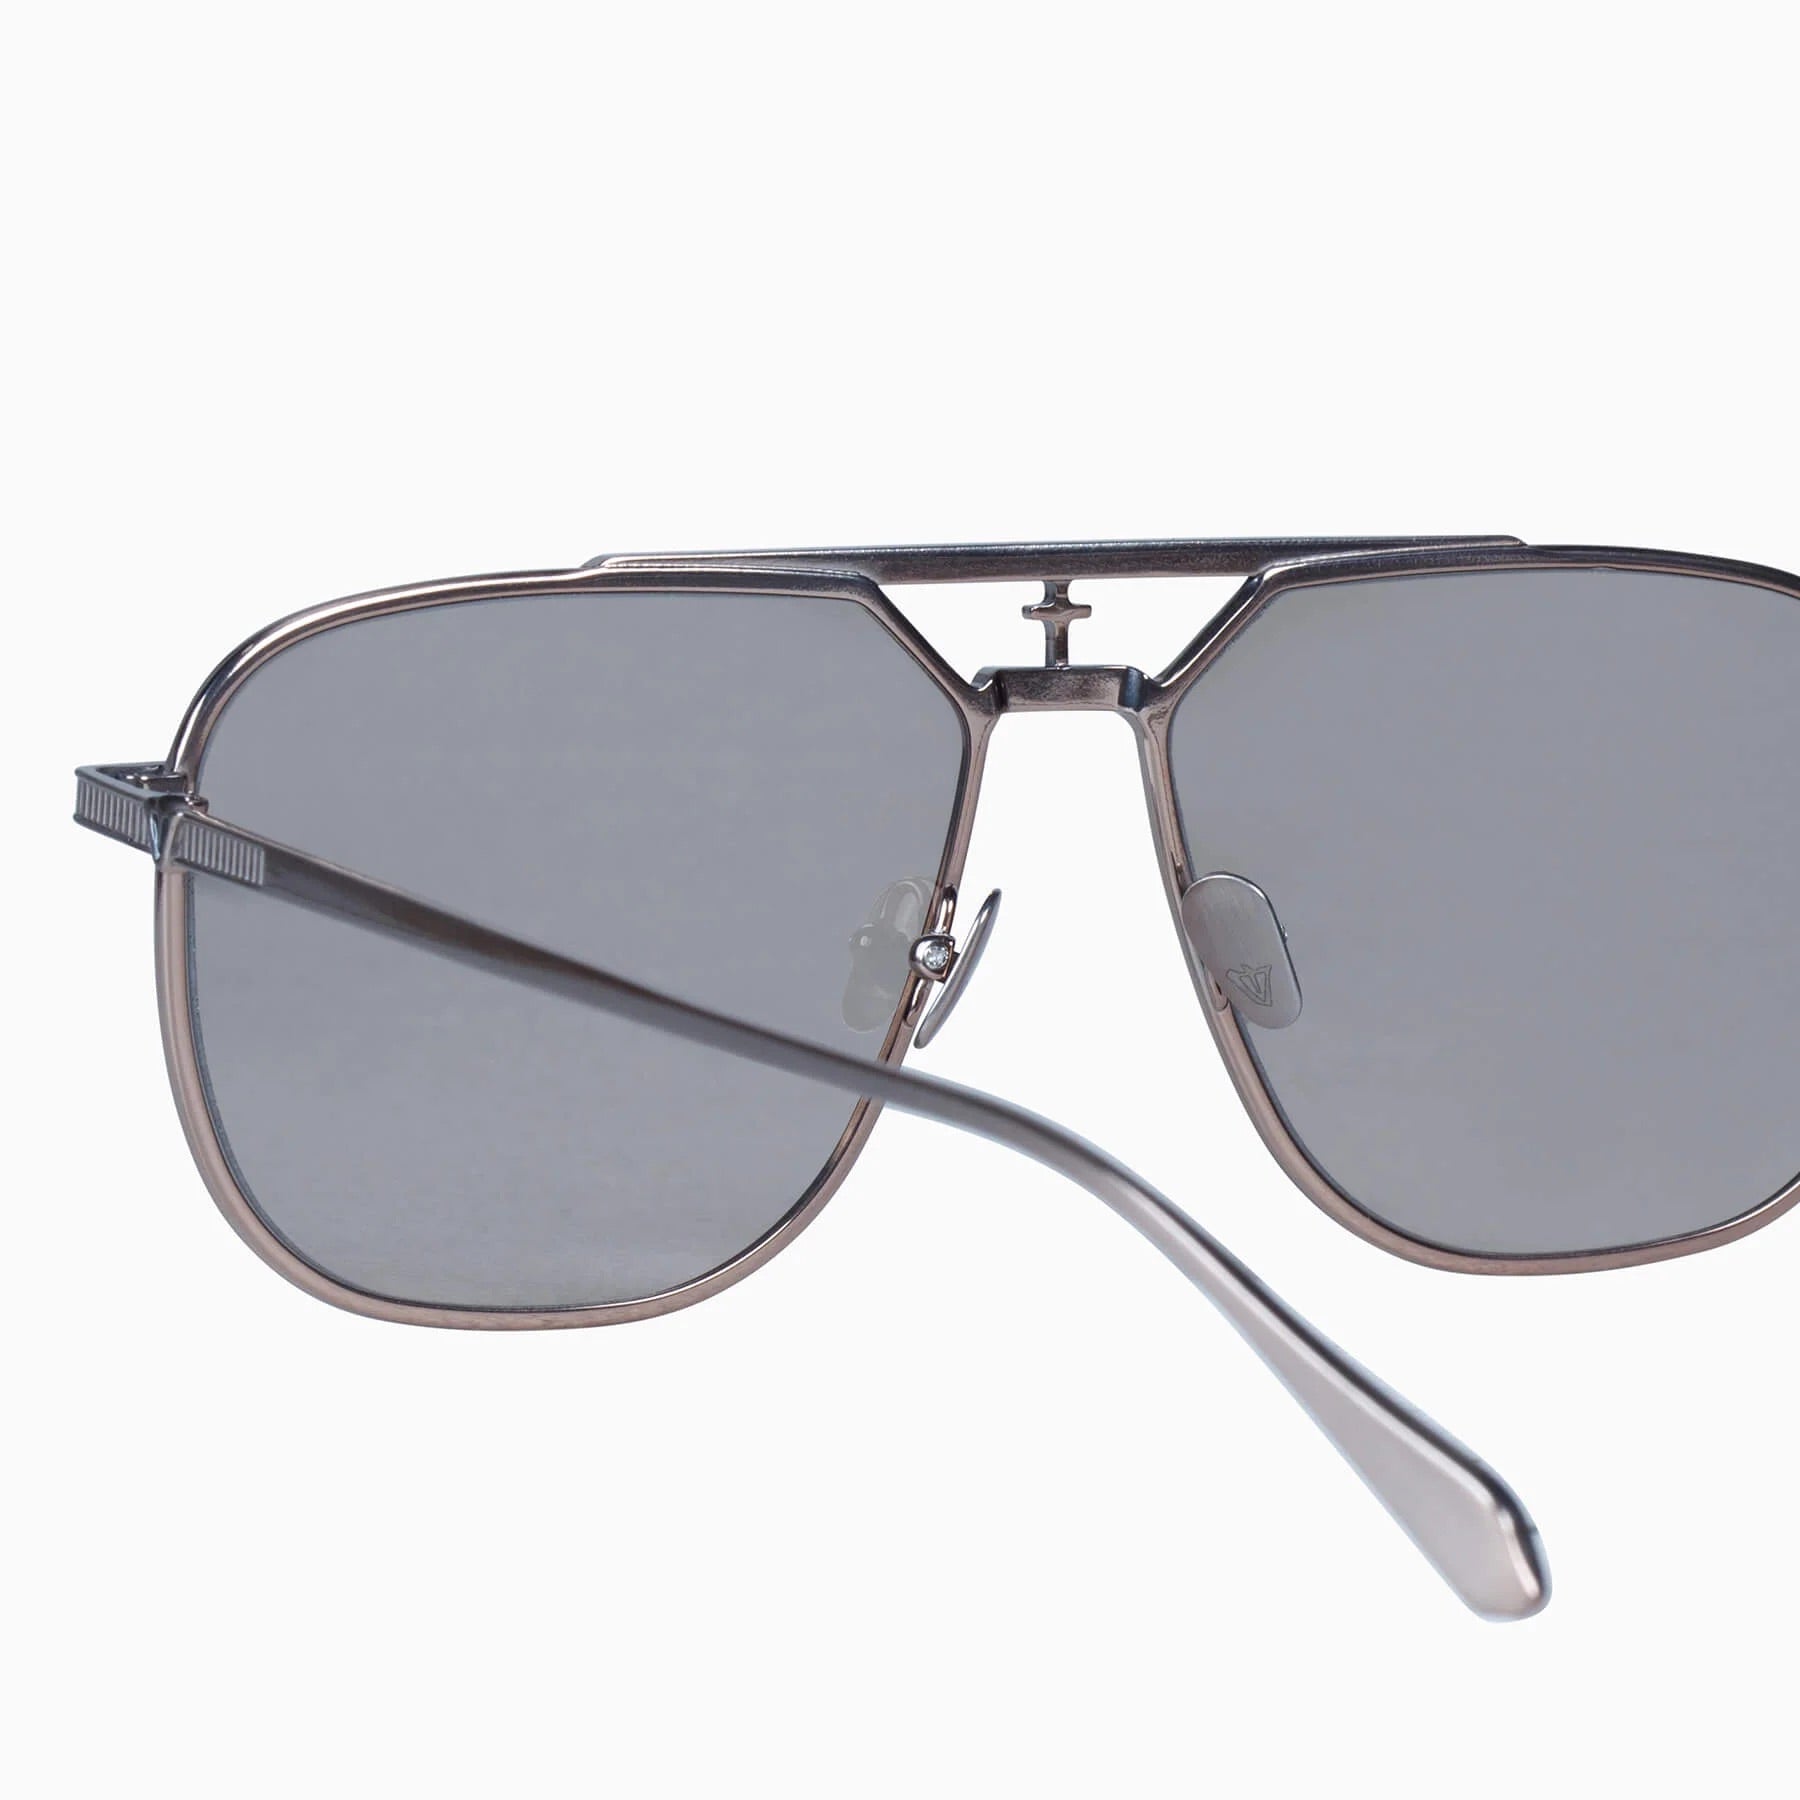 Capita | Sunglasses - Brushed Bronze Titanium / Light Brown Lens